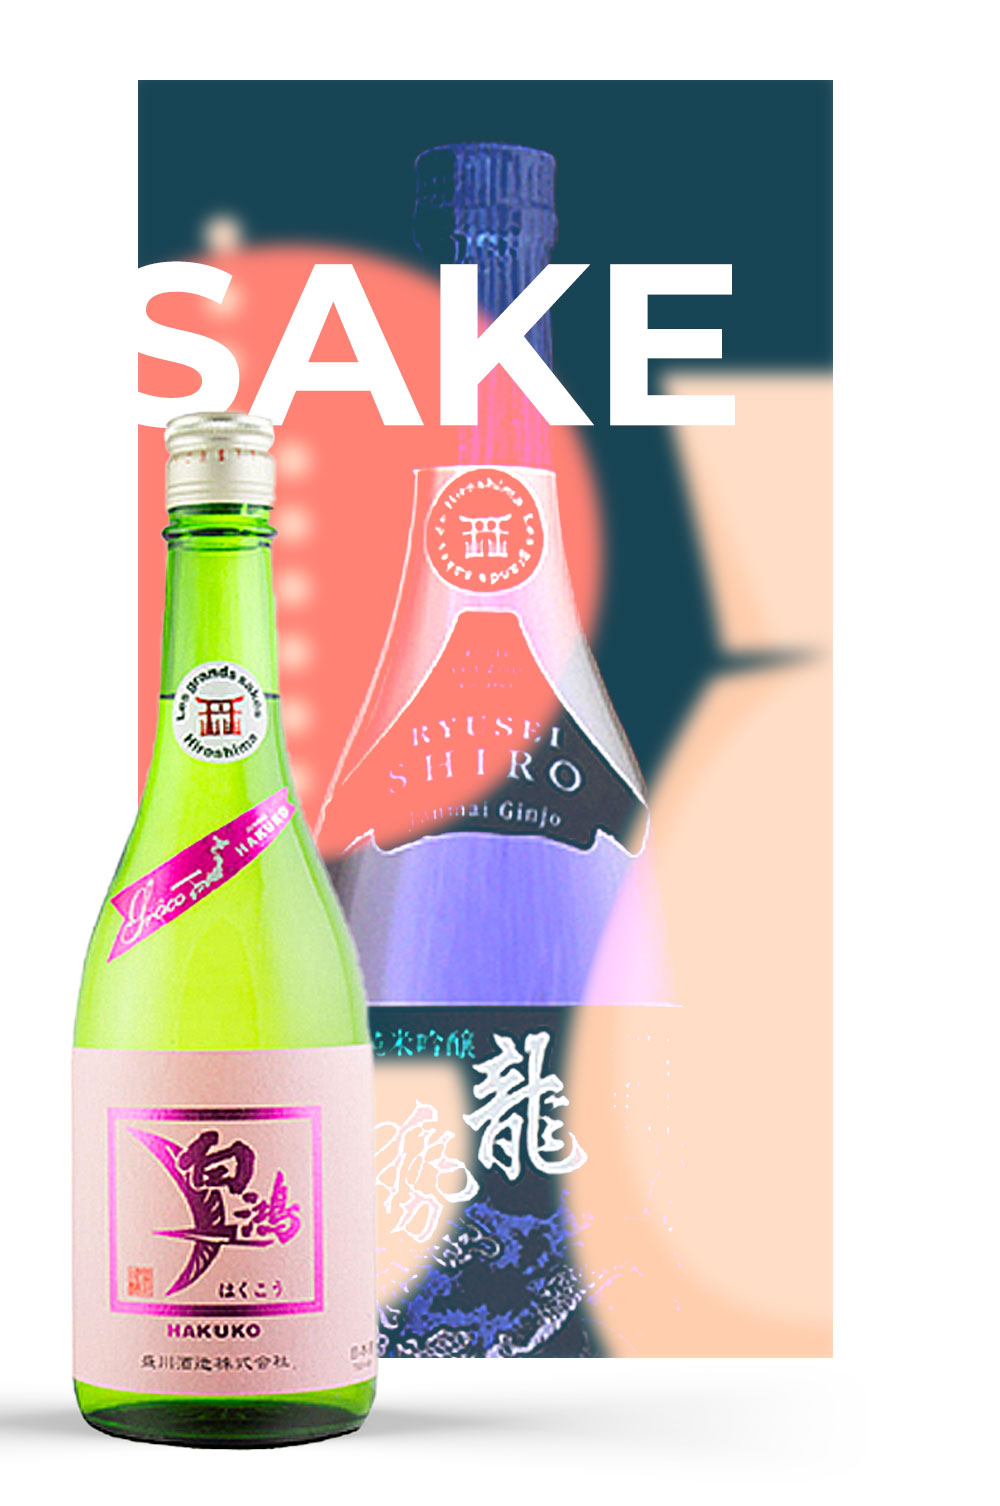 O maravilhoso mundo do sake: A produção